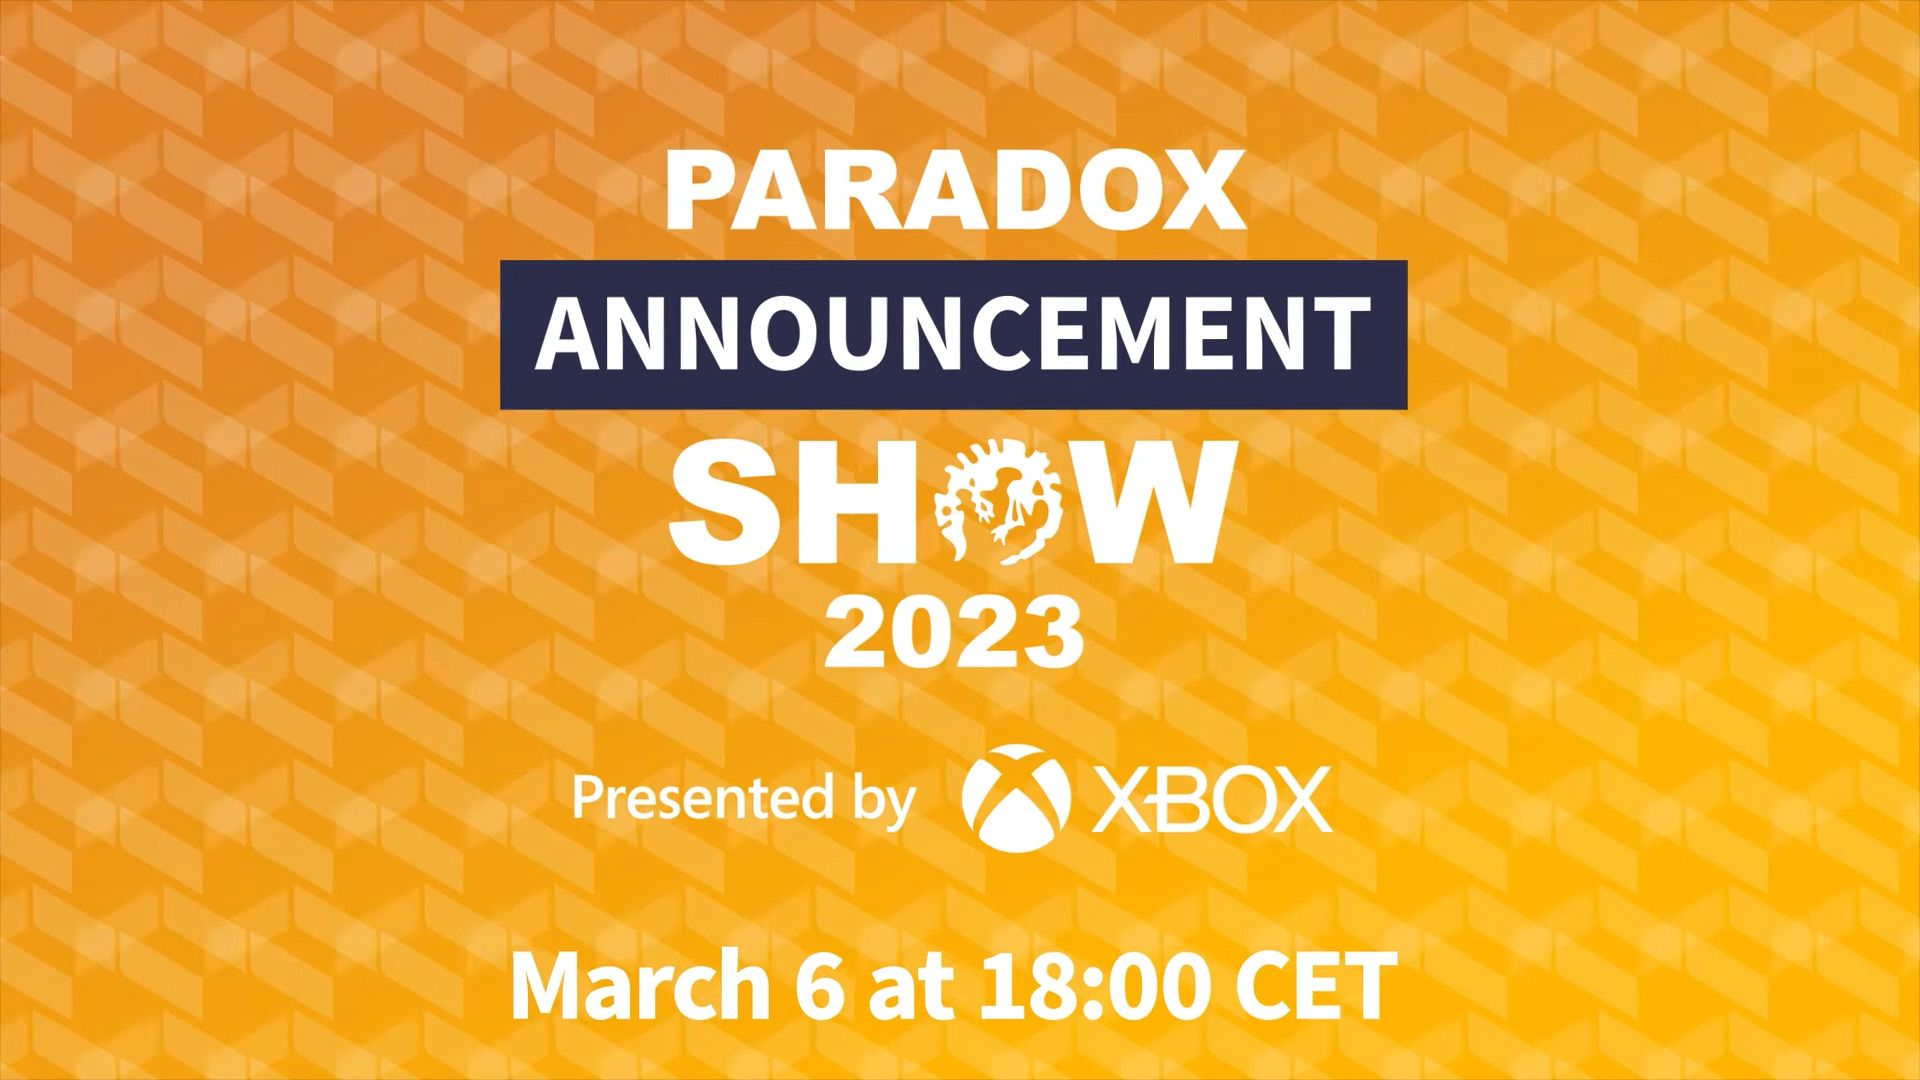 #Paradox Entertainment veranstaltet eine „Announcement Show“ in der nächsten Woche